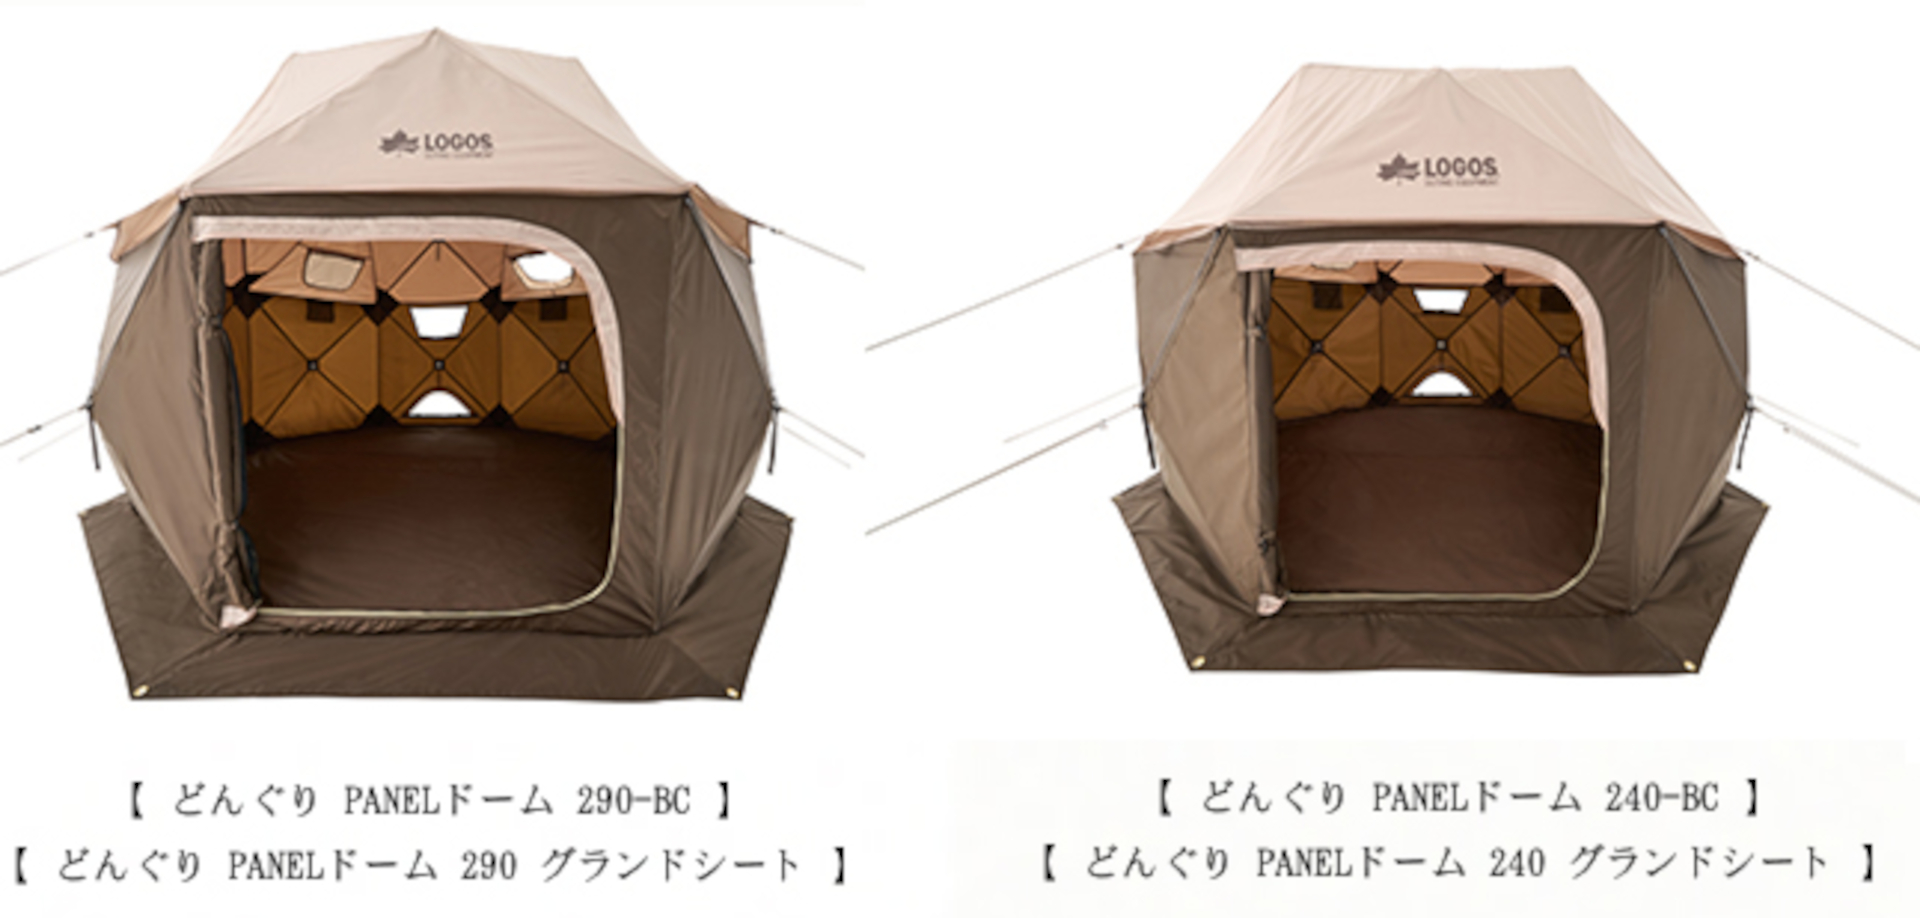 ロゴス、約3分で設営可能な大型テント「どんぐり PANEL ドーム」発売 